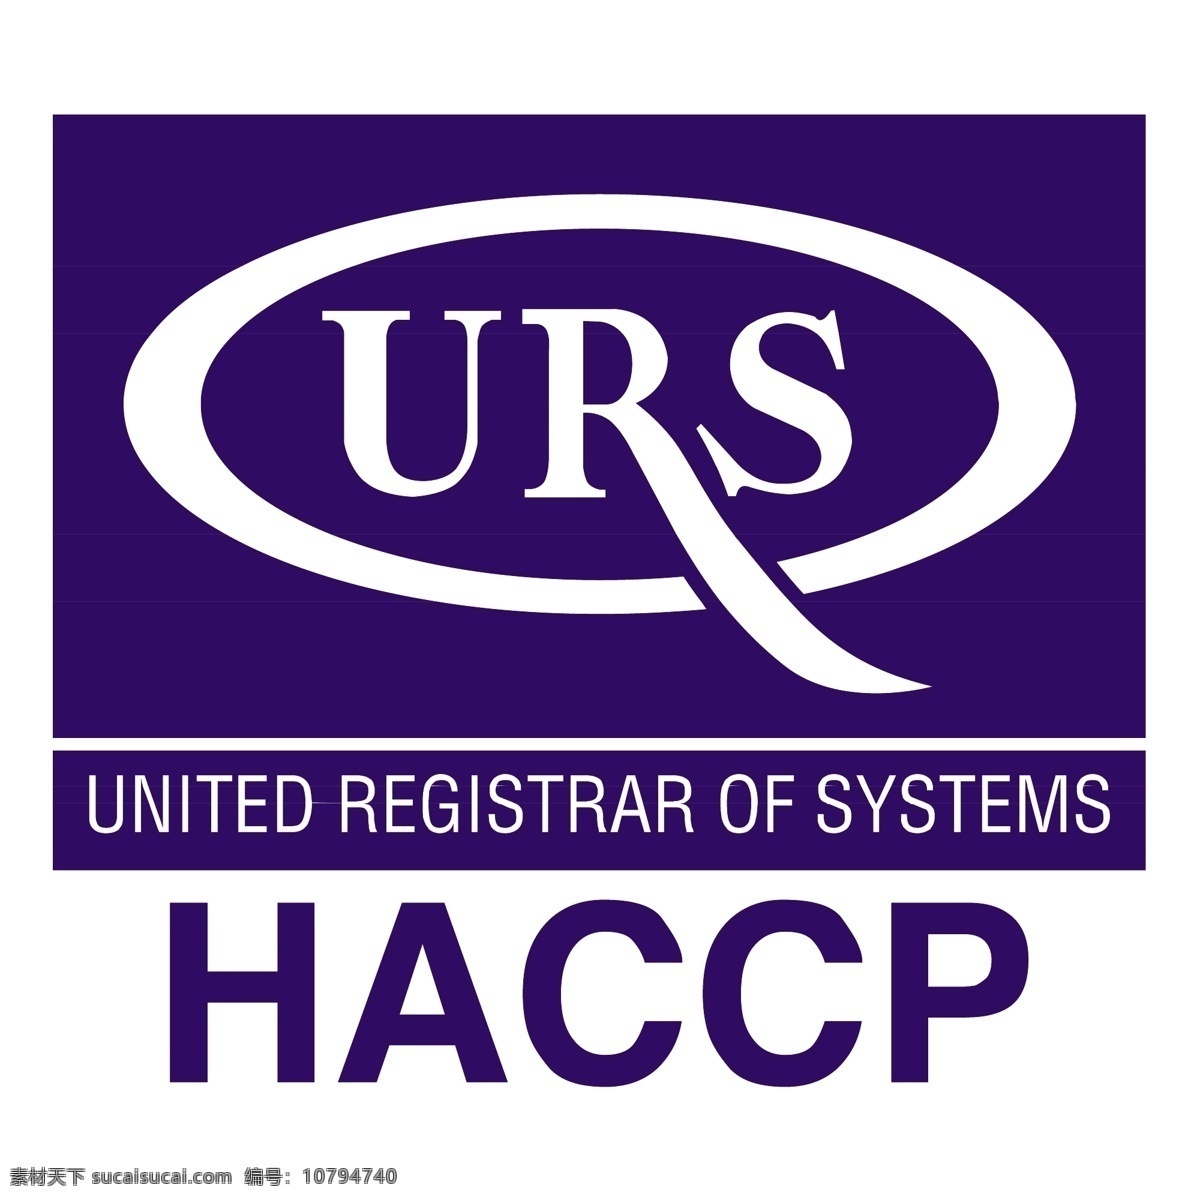 urs haccp 矢量标志下载 免费矢量标识 商标 品牌标识 标识 矢量 免费 品牌 公司 白色